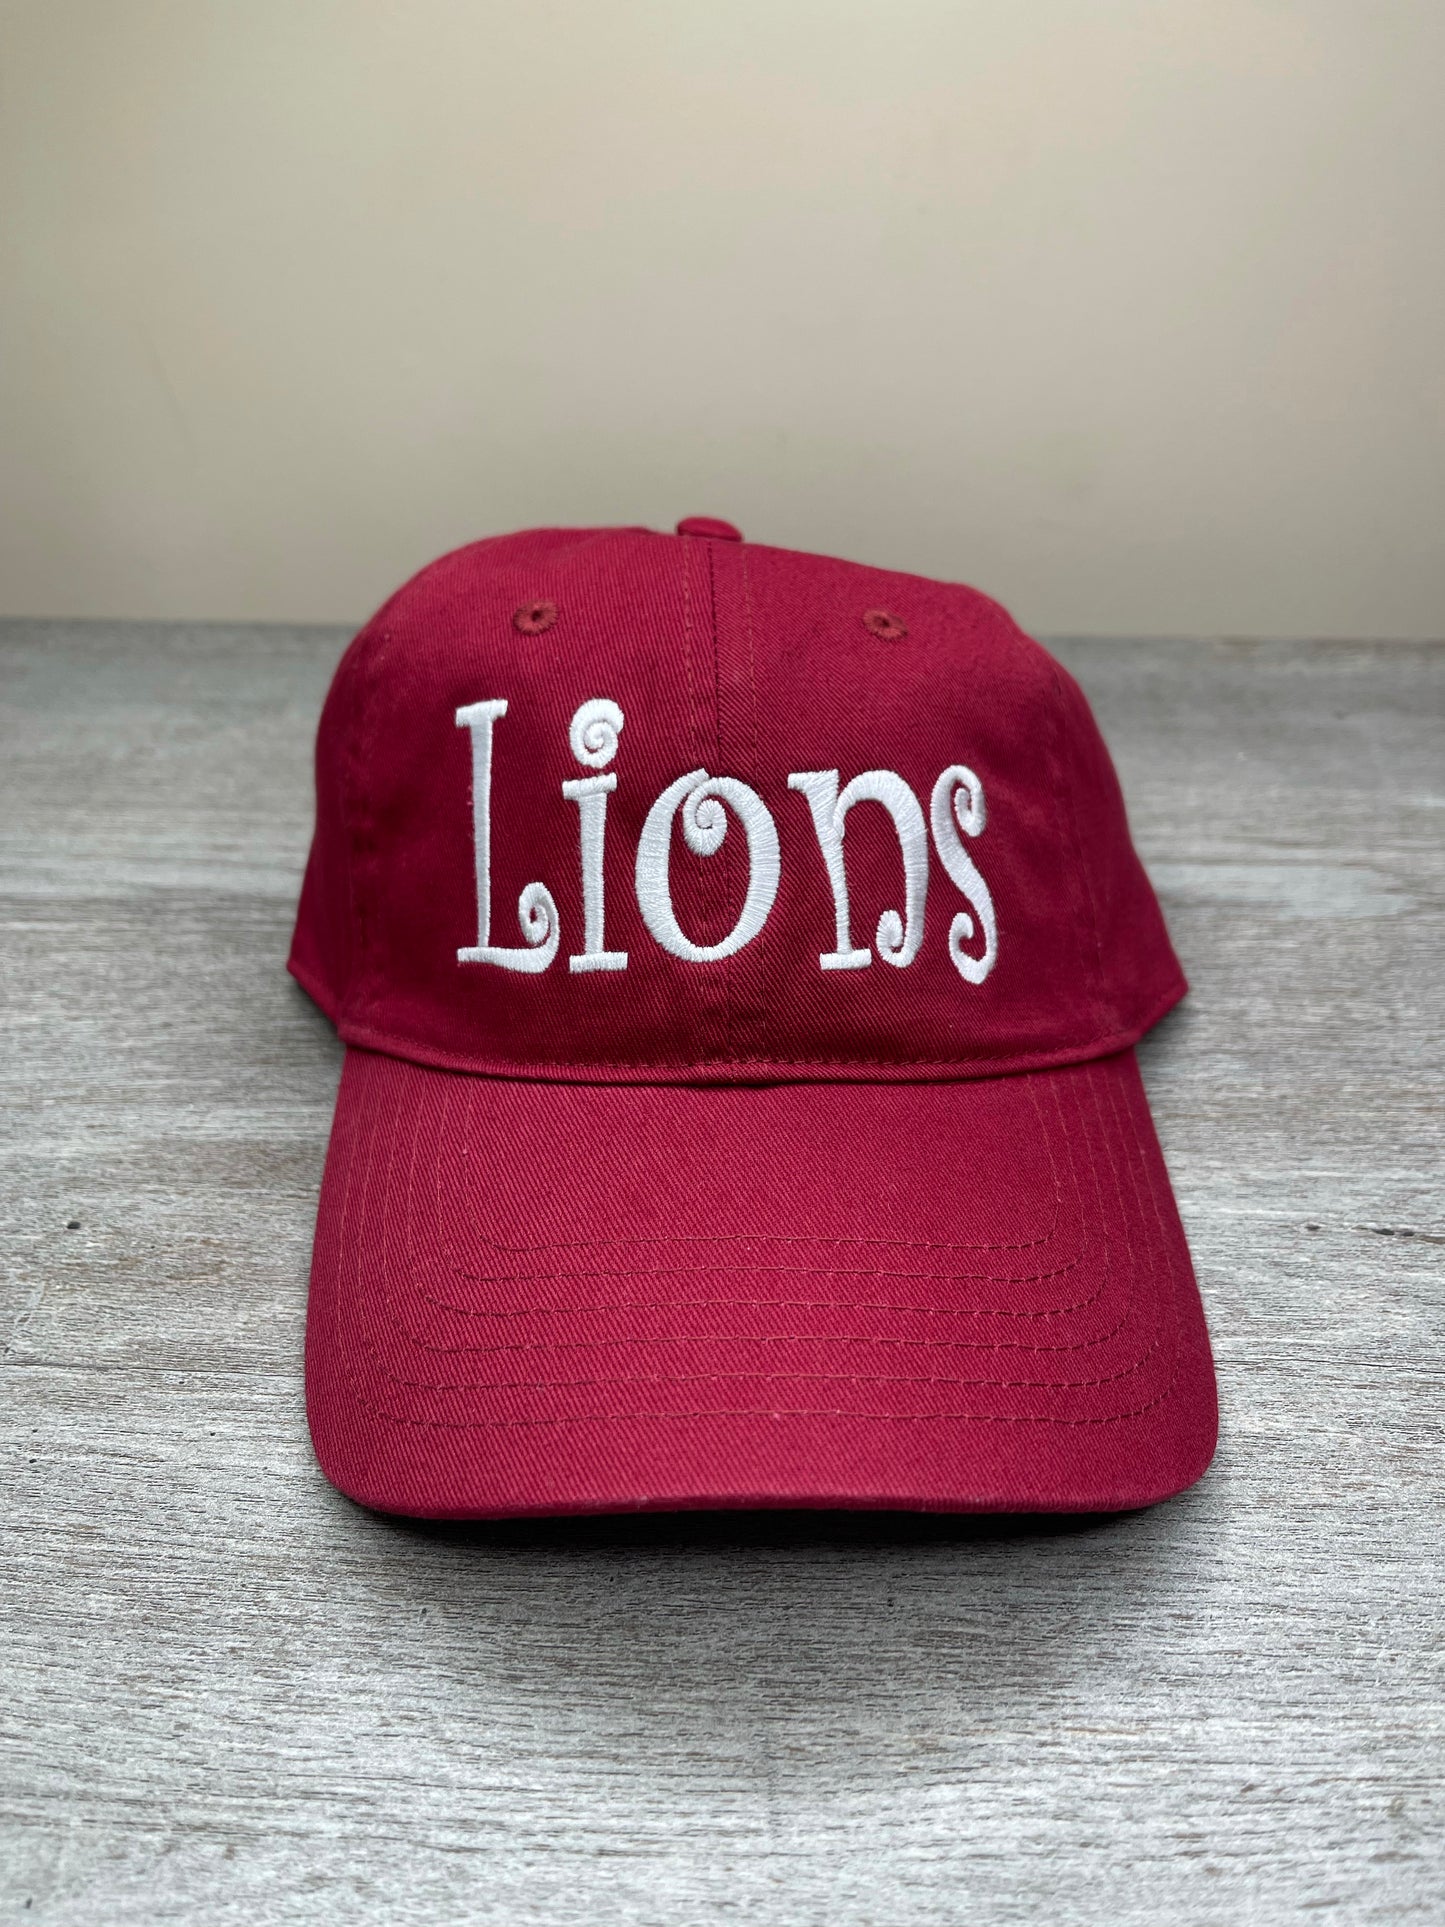 Prattville Lions Cap {Multiple Options Available}